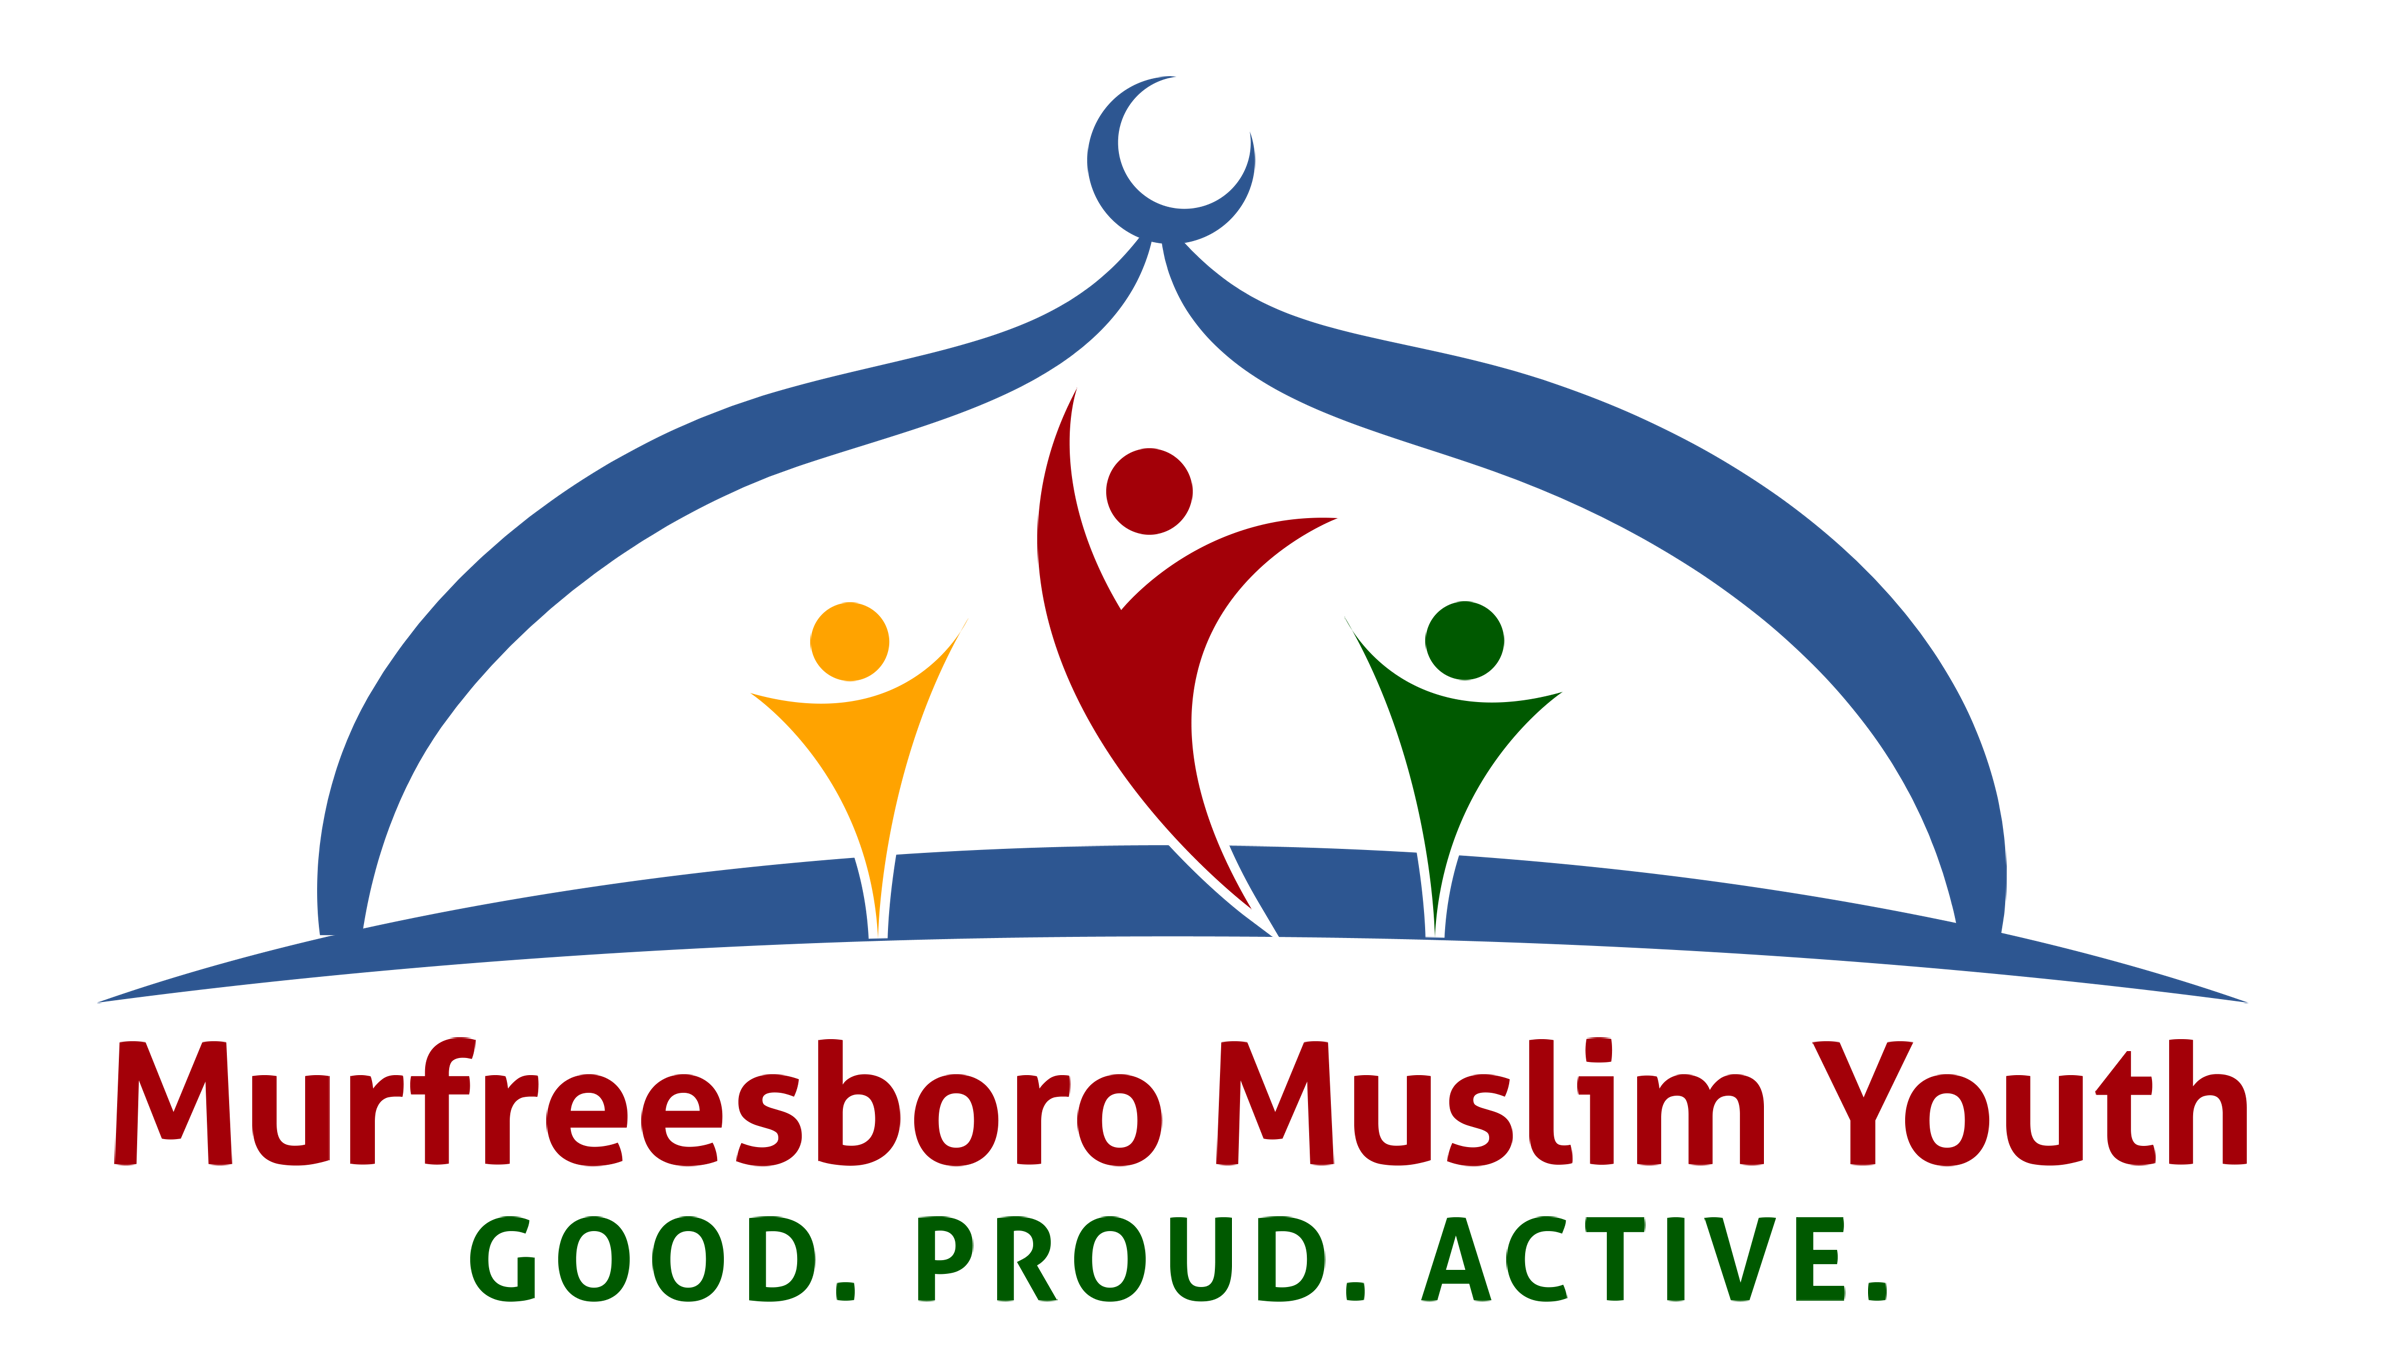 Murfreesboro Muslim Youth logo